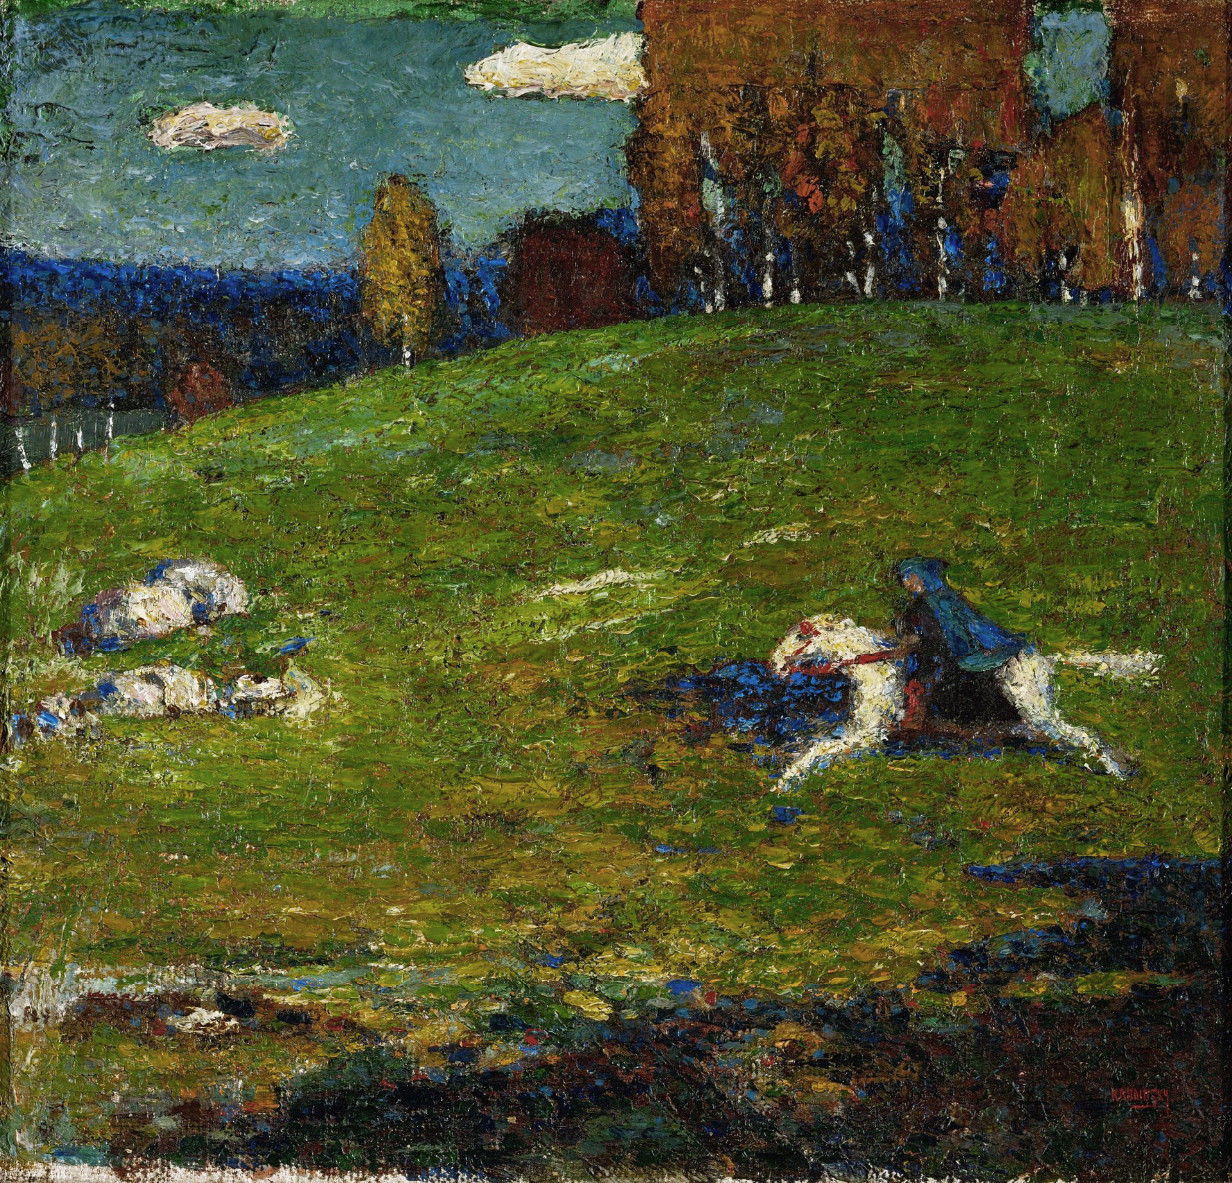 Beginning of Expressionism, Der Blaue Reiter van de painterWassily Kandinsky, 1903